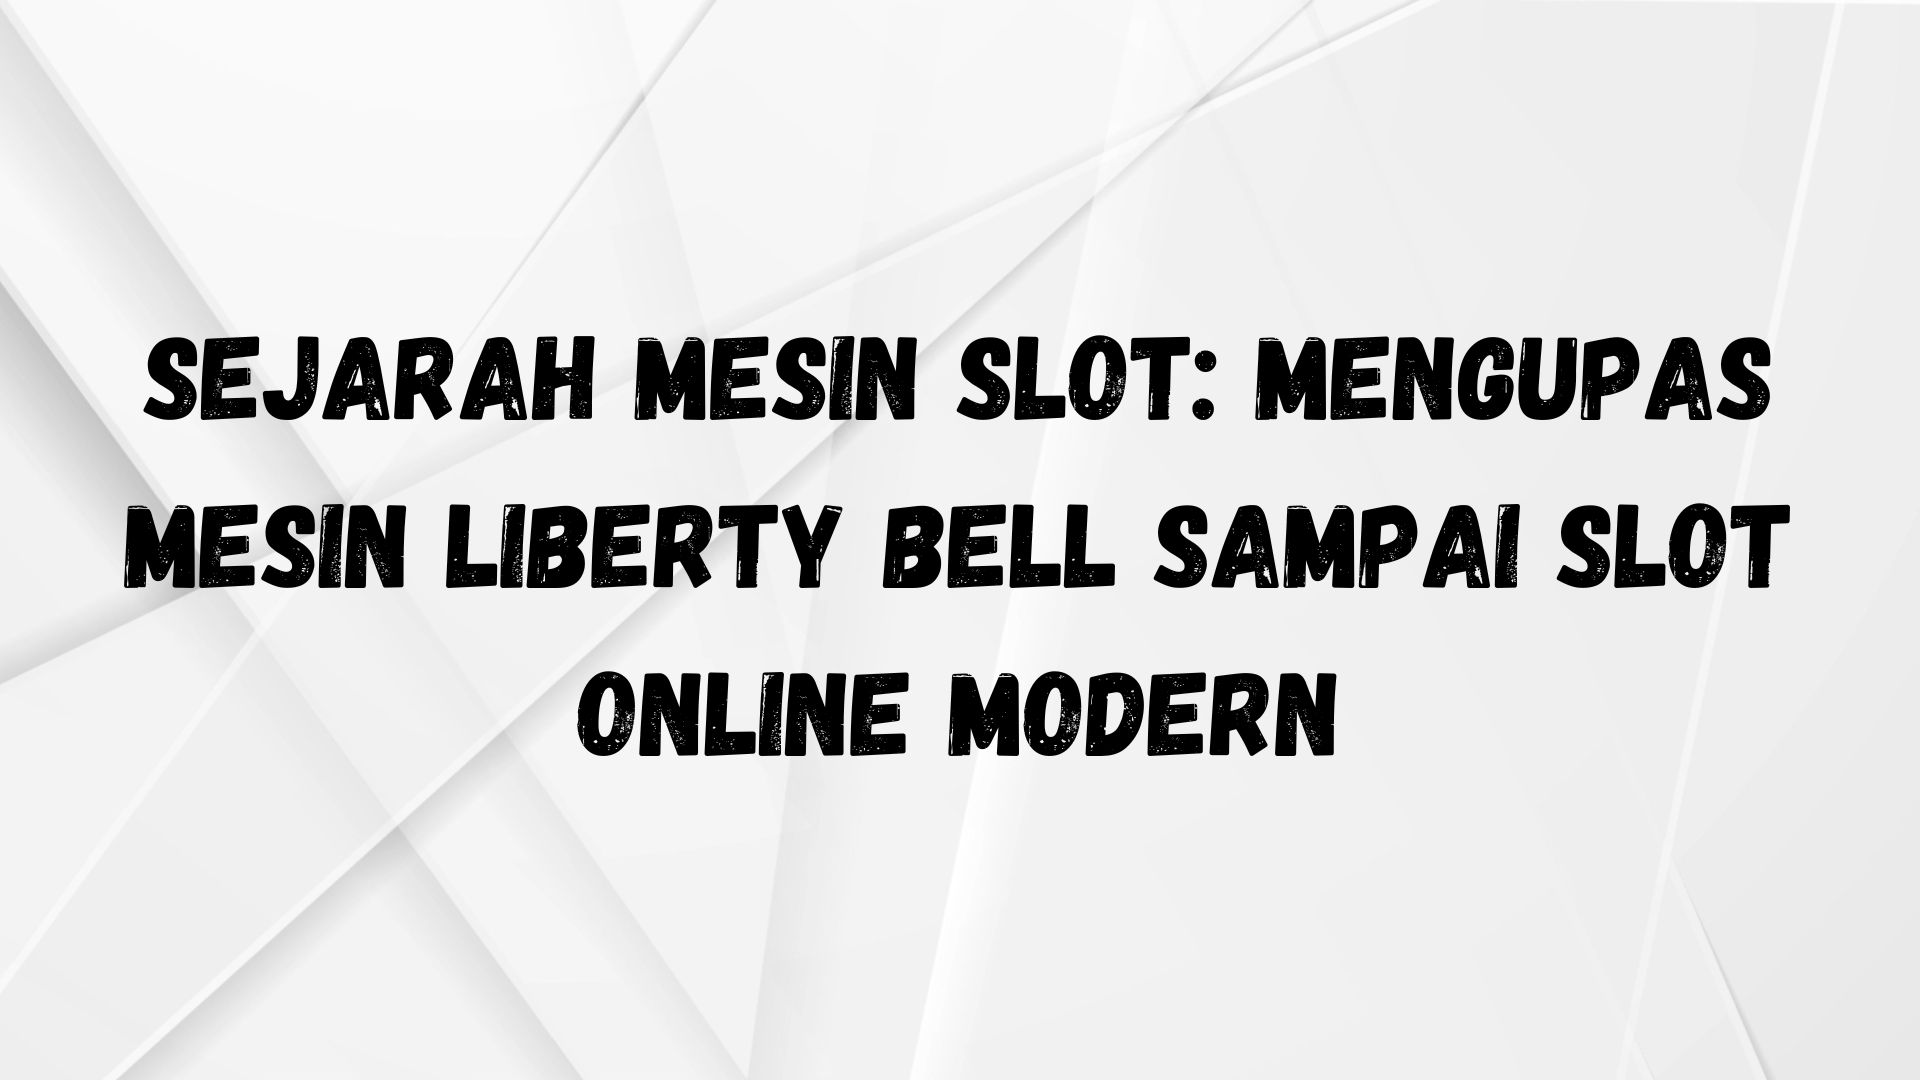 Sejarah Mesin Slot: Mengupas Mesin Liberty Bell Sampai Slot Online Modern